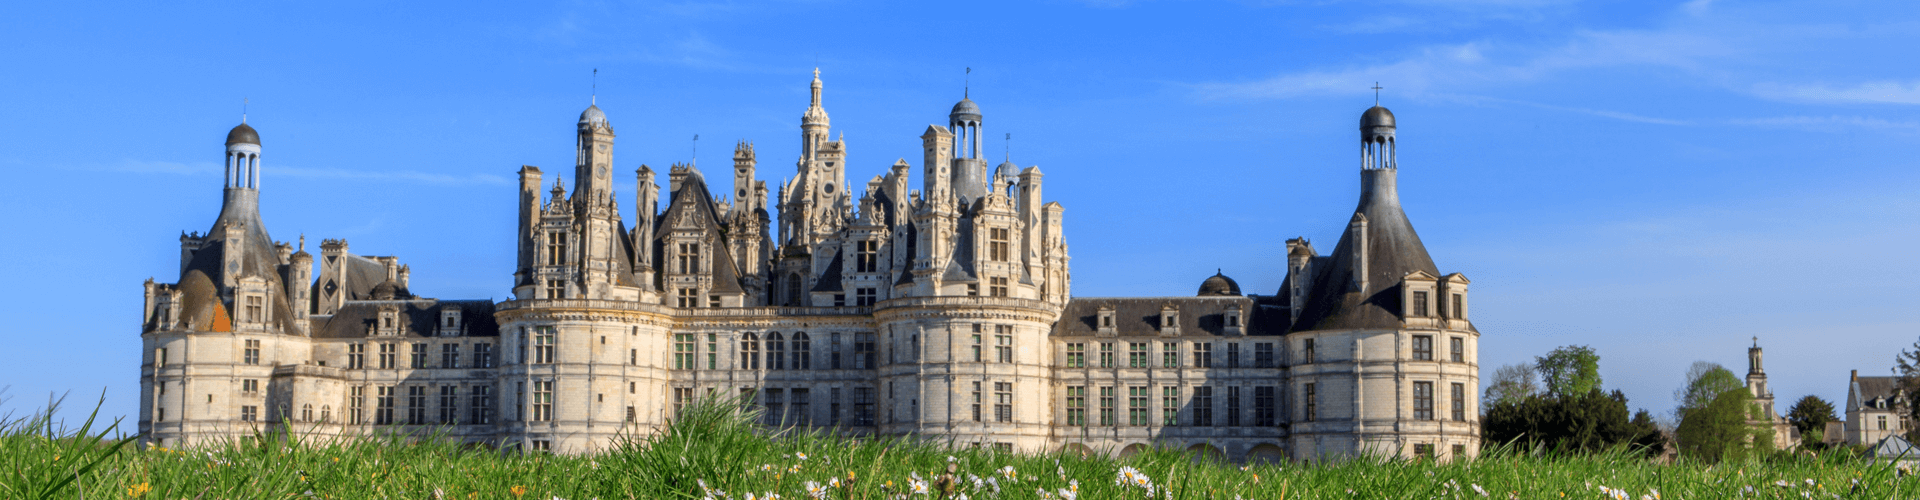 Bezienswaardigheden in Centre, midden Frankrijk: Kasteel van Chambord